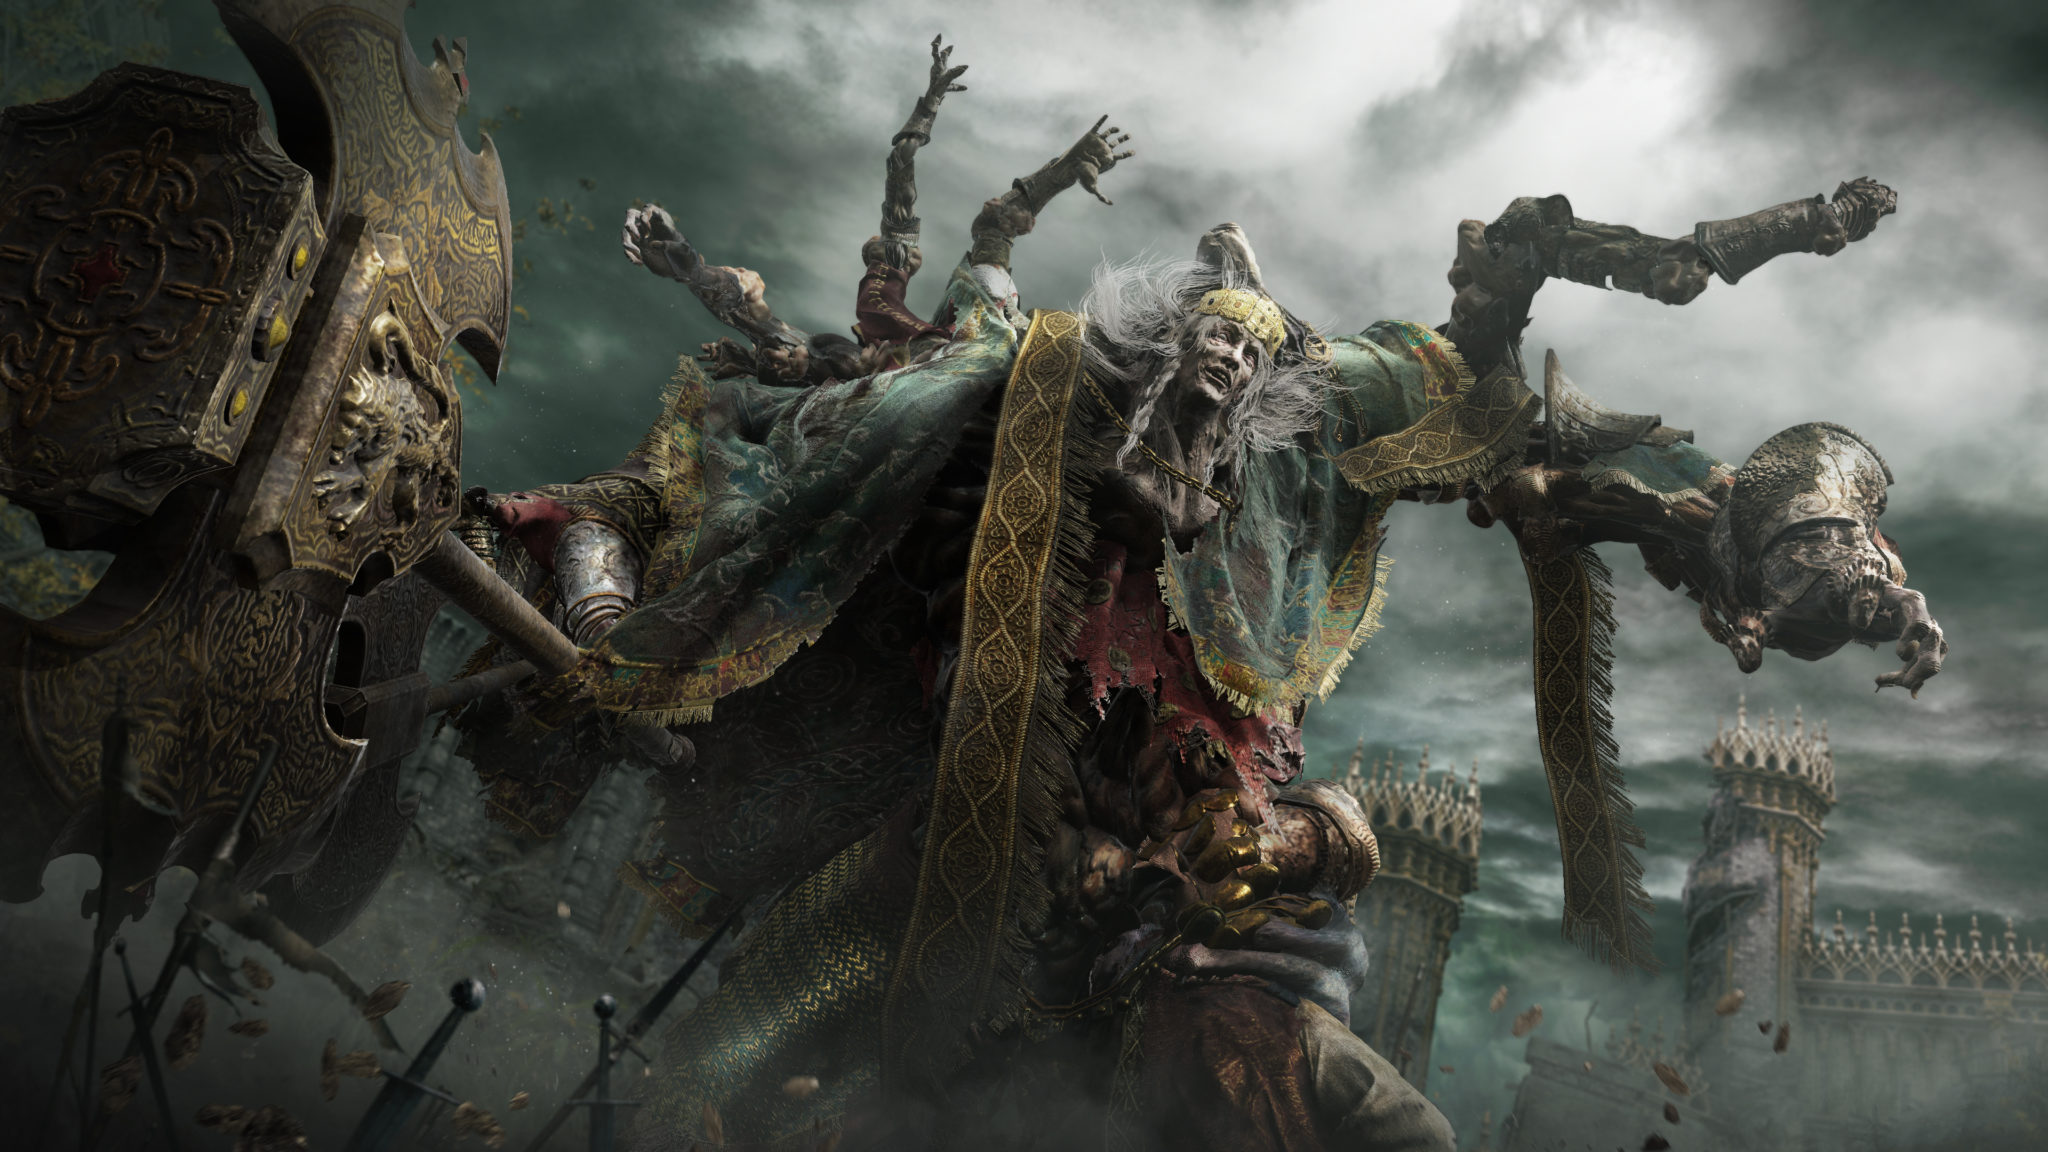 God of War Ragnarok pode não ser exclusivo do PS5 e vir ao PS4